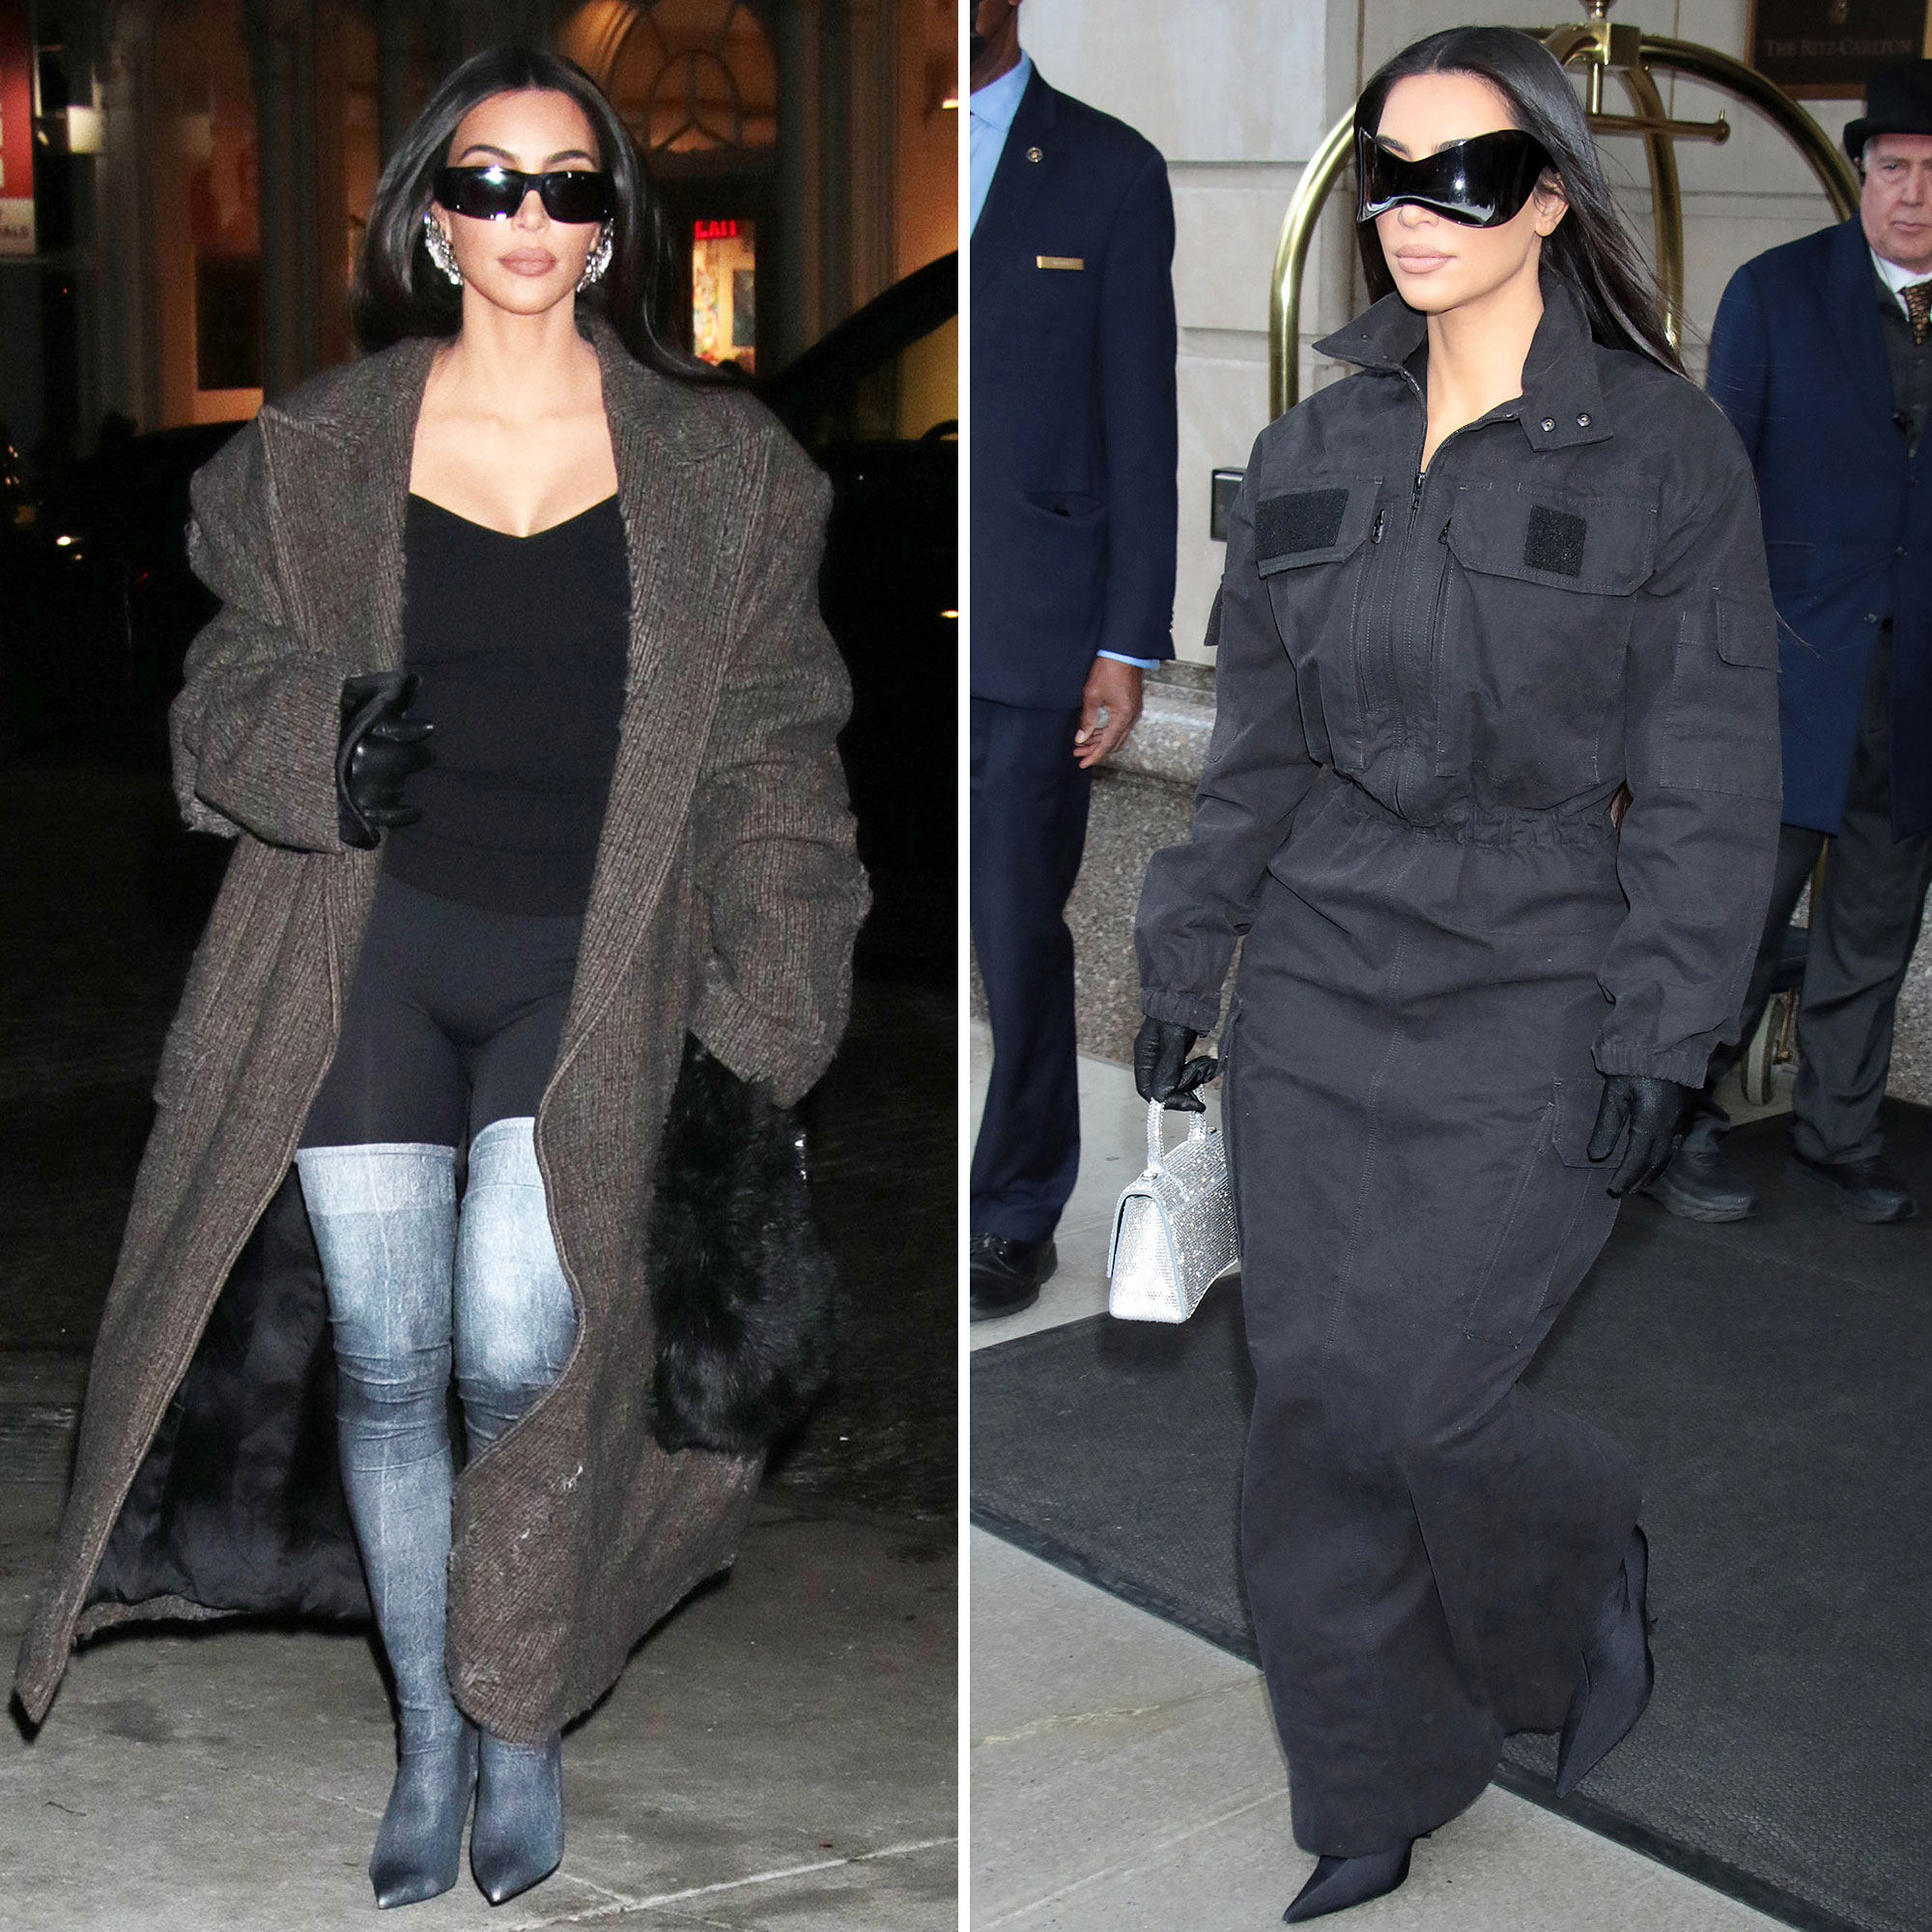 Kim Kardashian's Wild Fashion Looks From Her New York City Trip